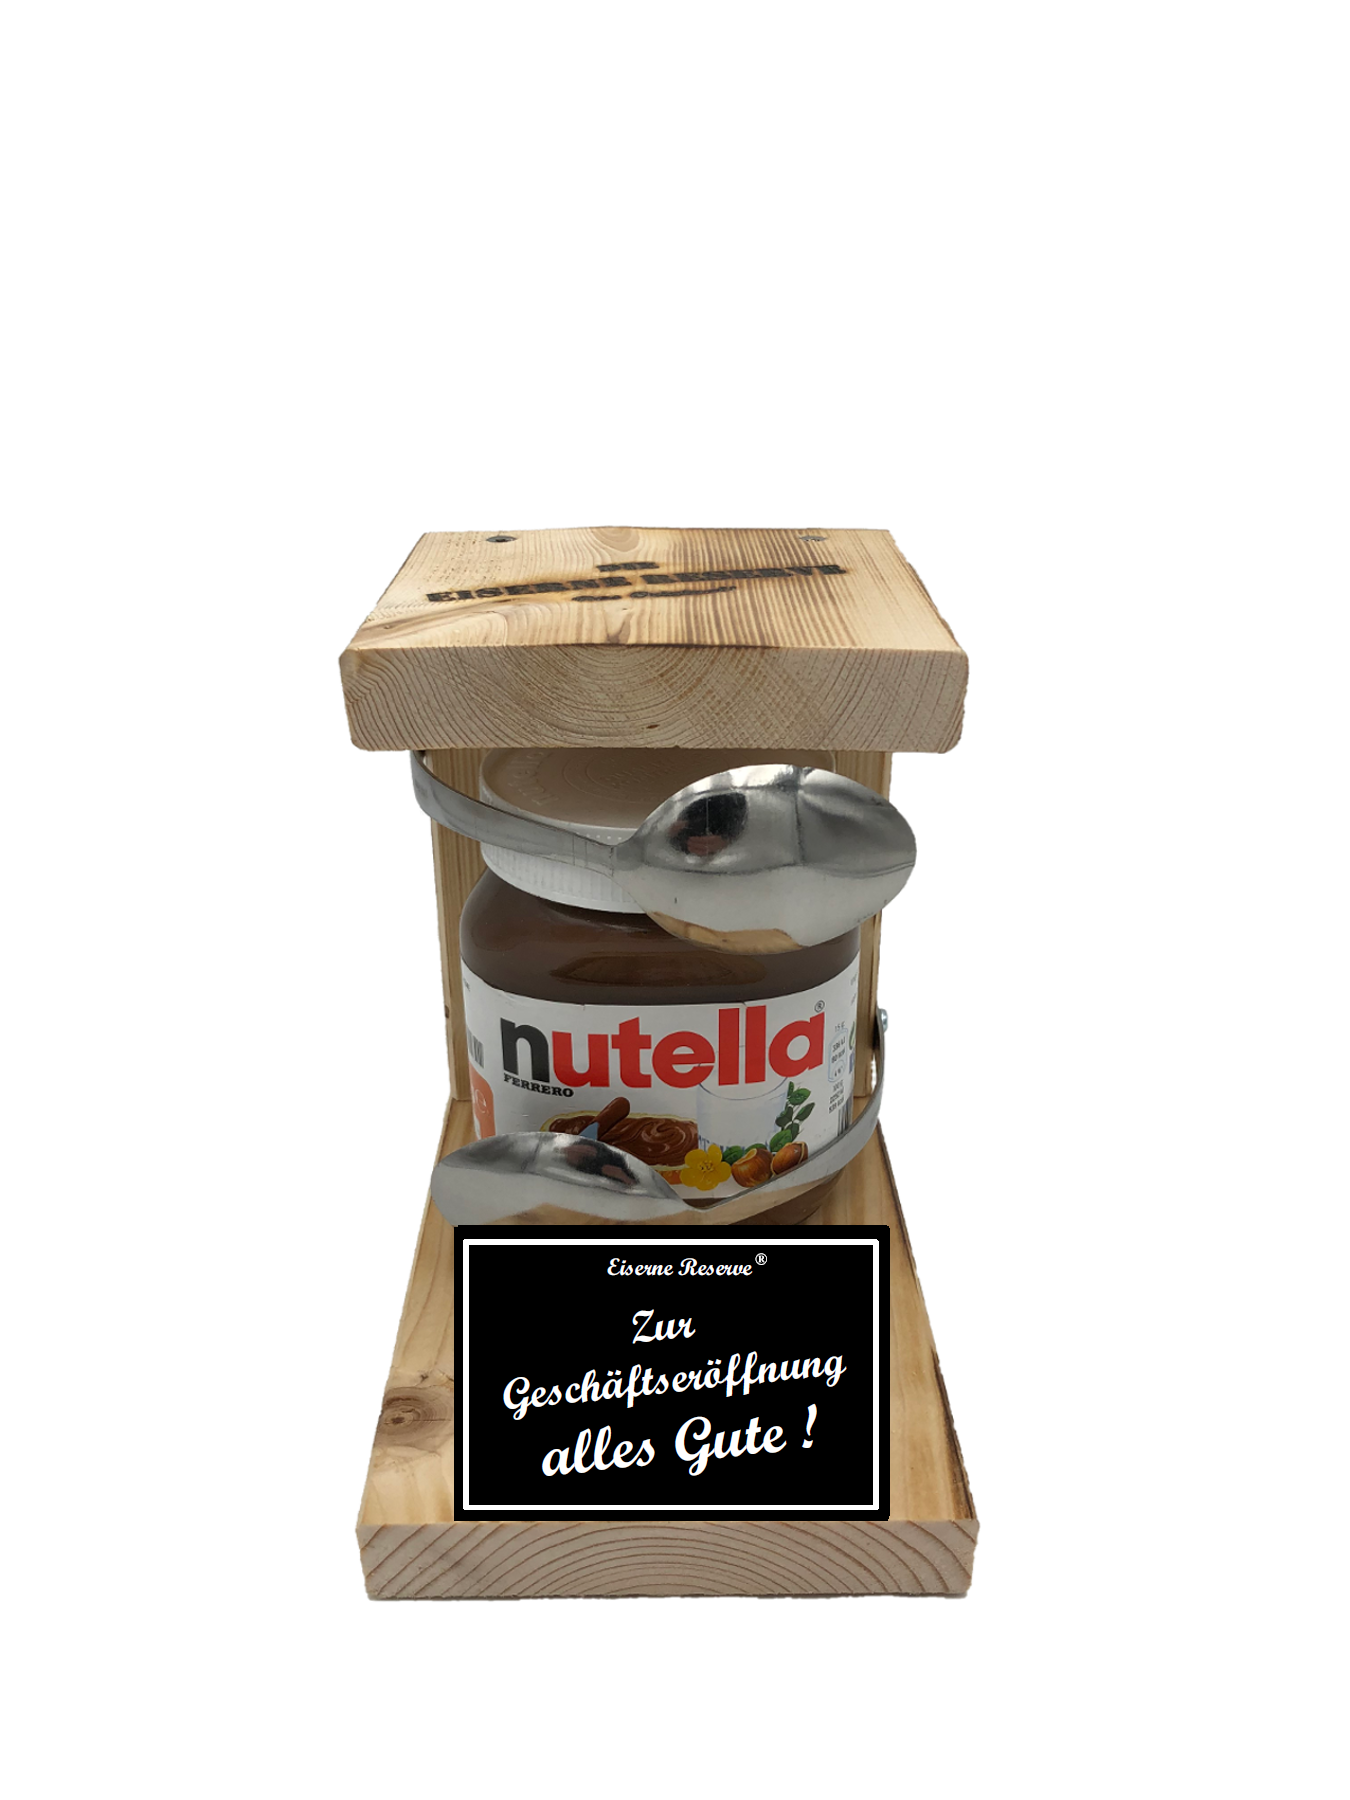 Zur Geschäftseröffnung alles Gute Löffel Nutella Geschenk - Die Nutella Geschenkidee